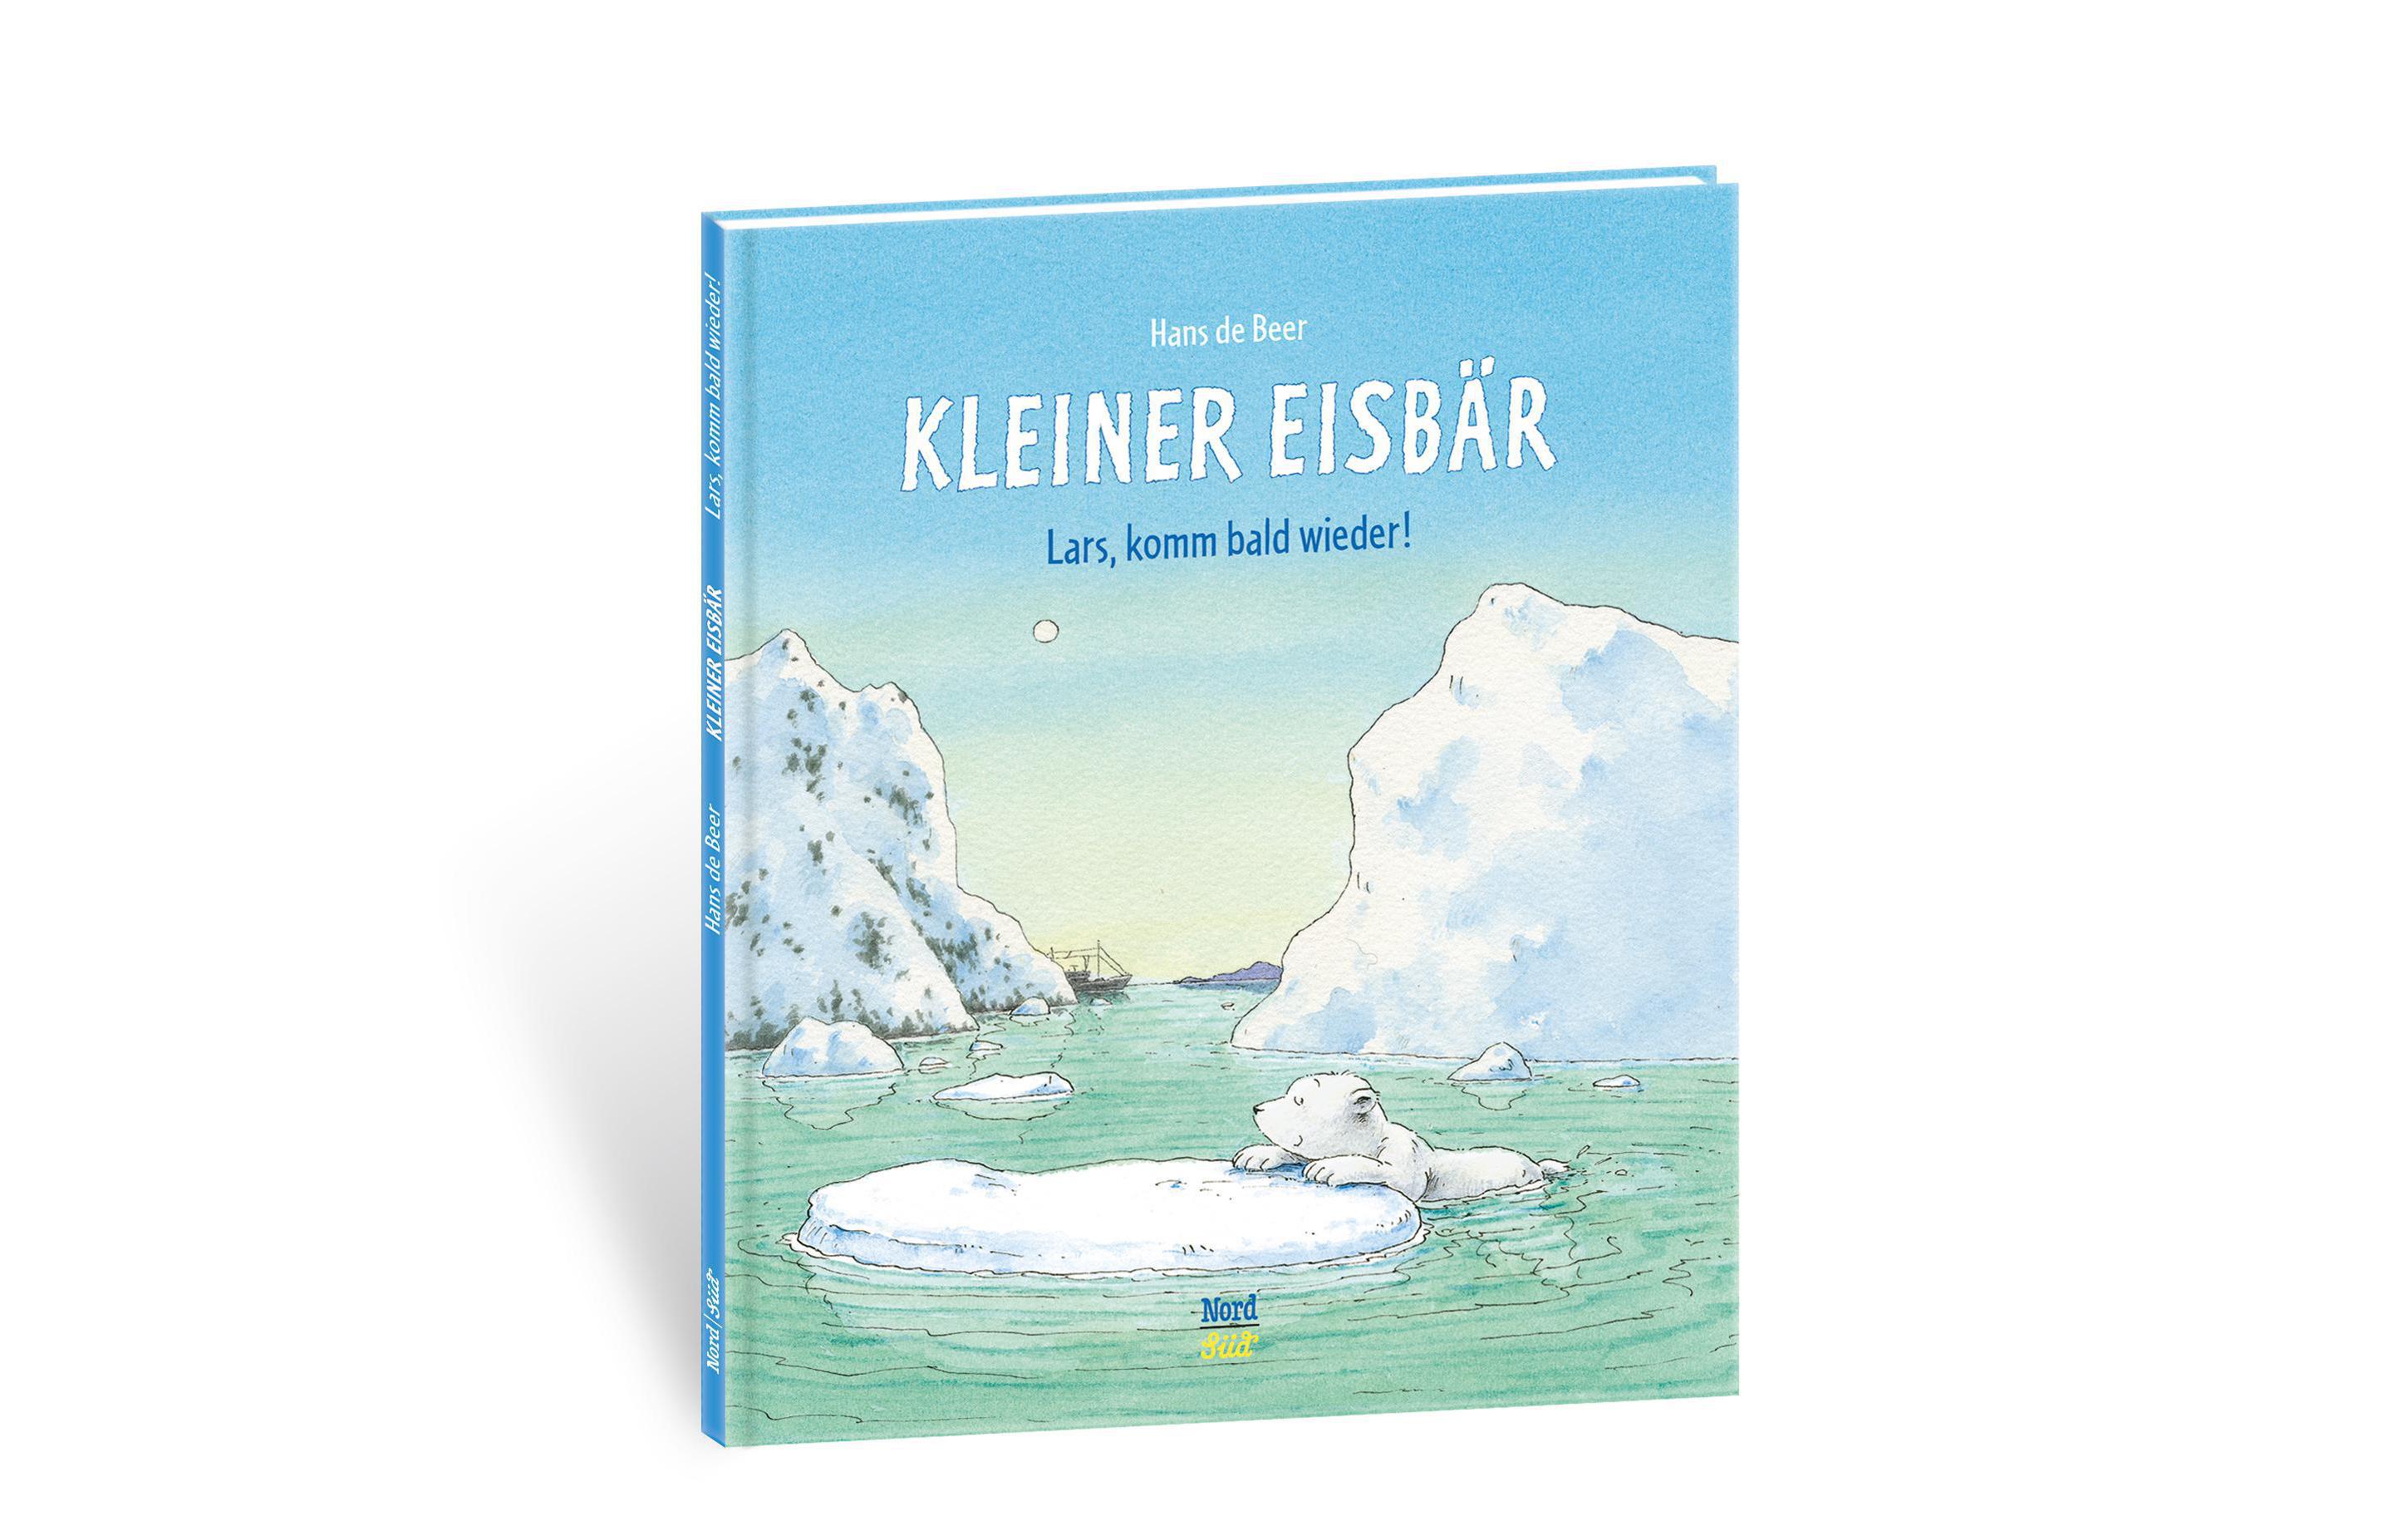 NordSüdVerlag Bilderbuch Kleiner Eisbär- Lars, komm bald wieder!